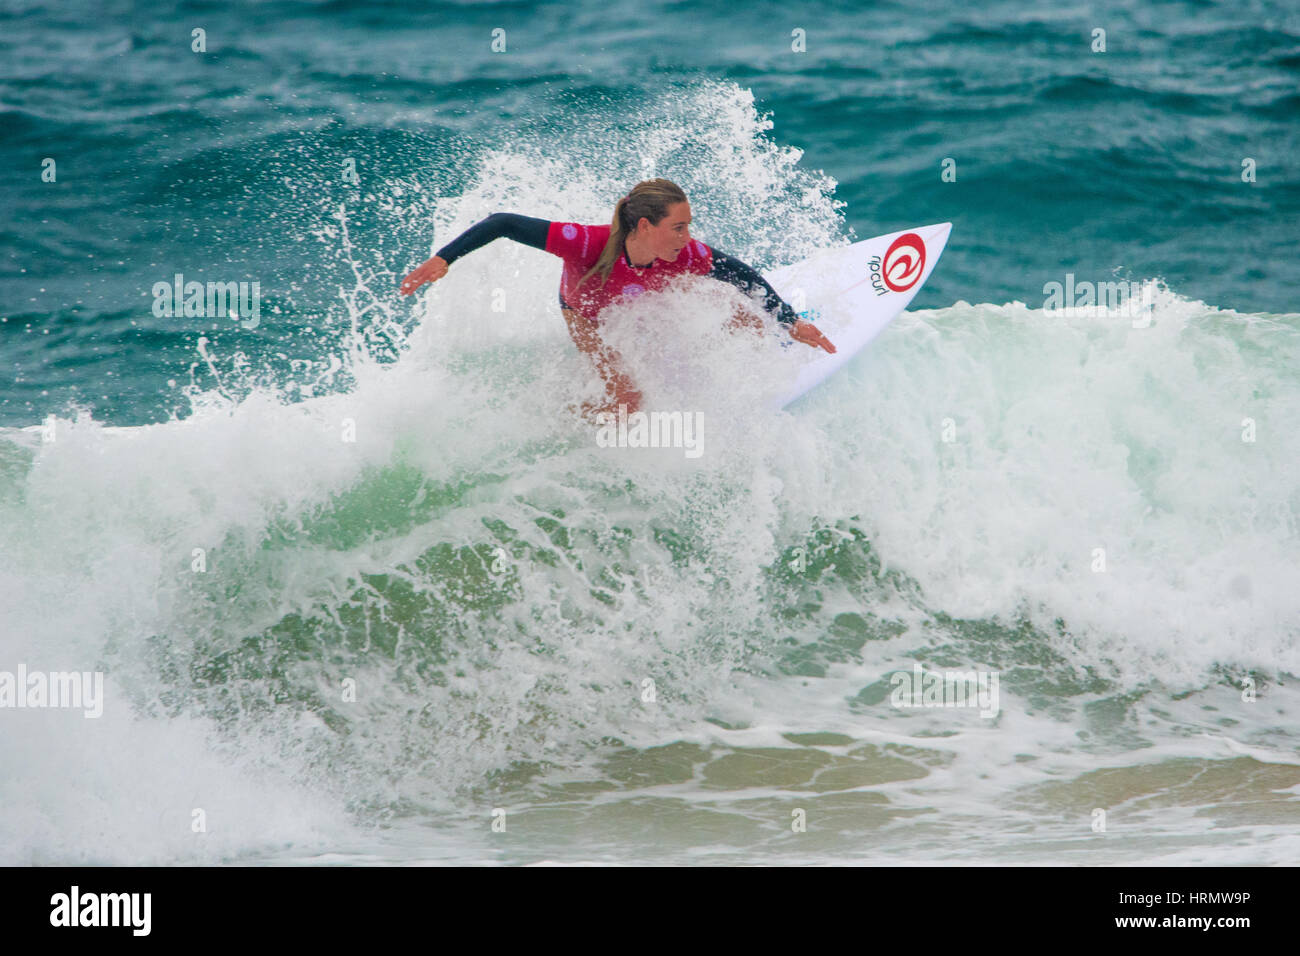 Sydney, Australia - 3 Marzo 2017: Australian Open di surf evento sportivo a Manly Beach, Australia con il surf, la BMX, pattinaggio e musica. Nella foto è il surf durante le ragazze fanno muovere la vostra donna Pro series presso l'evento. Credito: mjmediabox / Alamy Live News Foto Stock